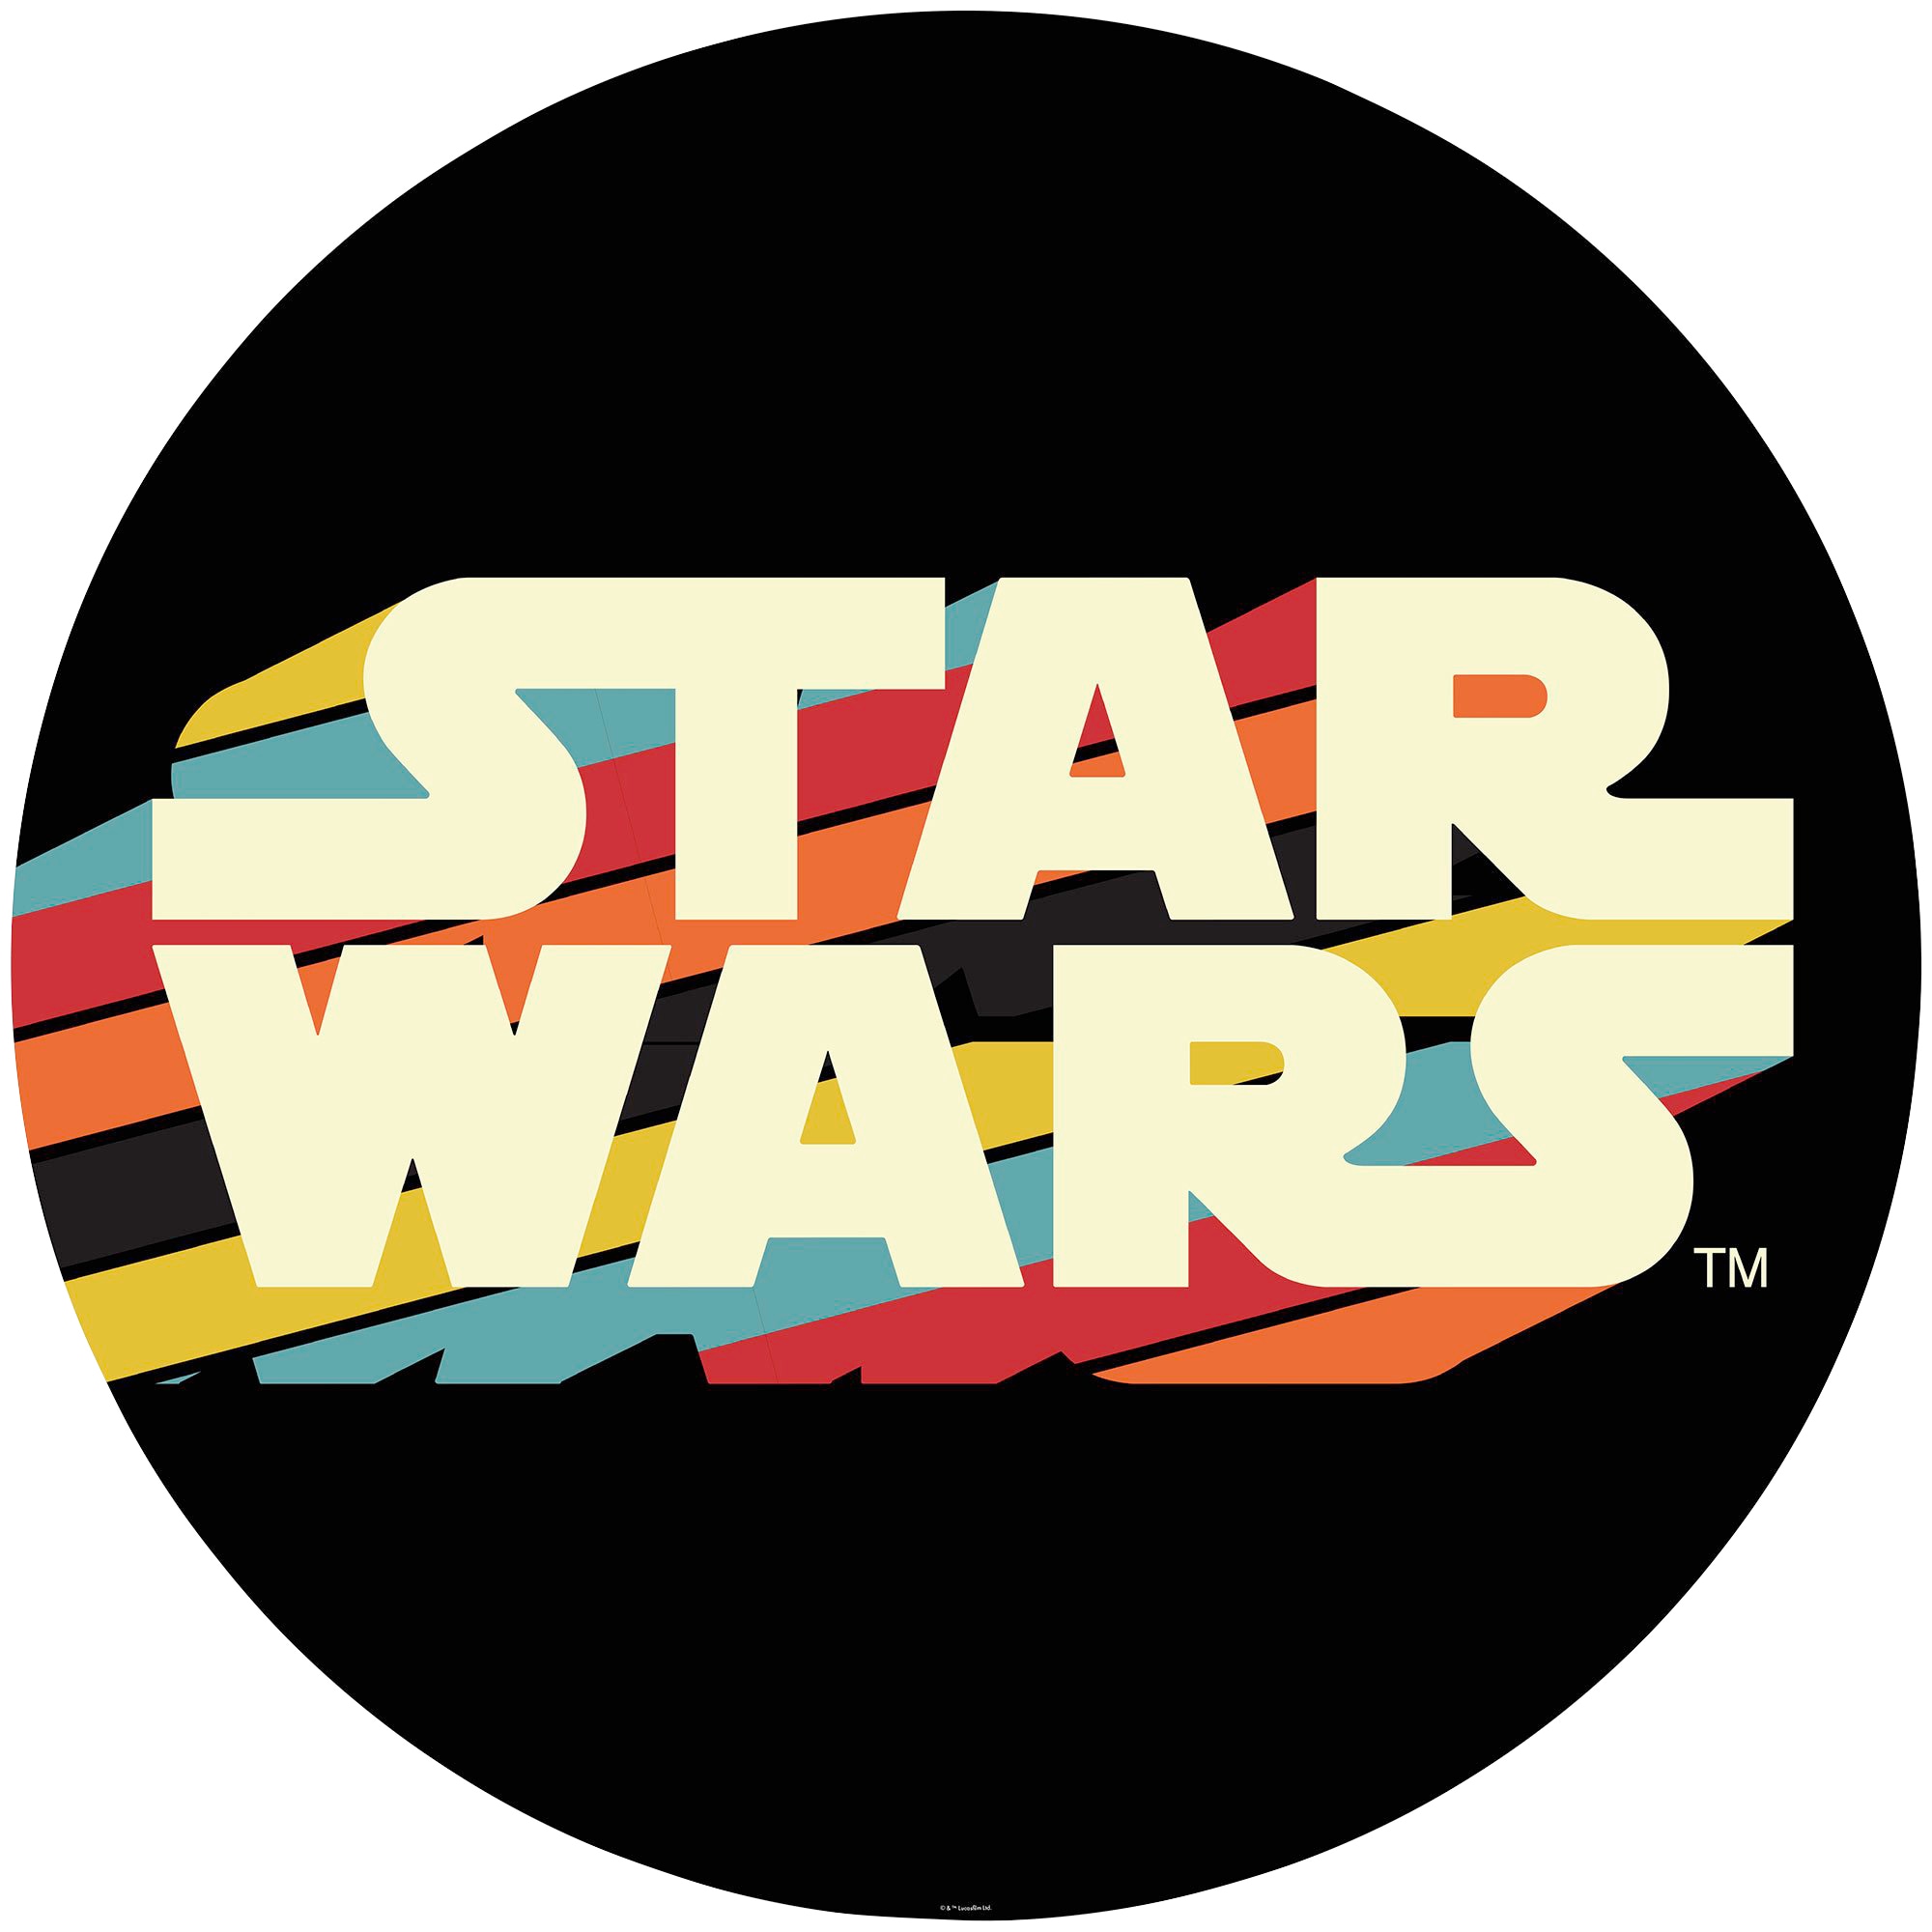 Fototapete »Star Wars Typeface«, 125x125 cm (Breite x Höhe), rund und selbstklebend